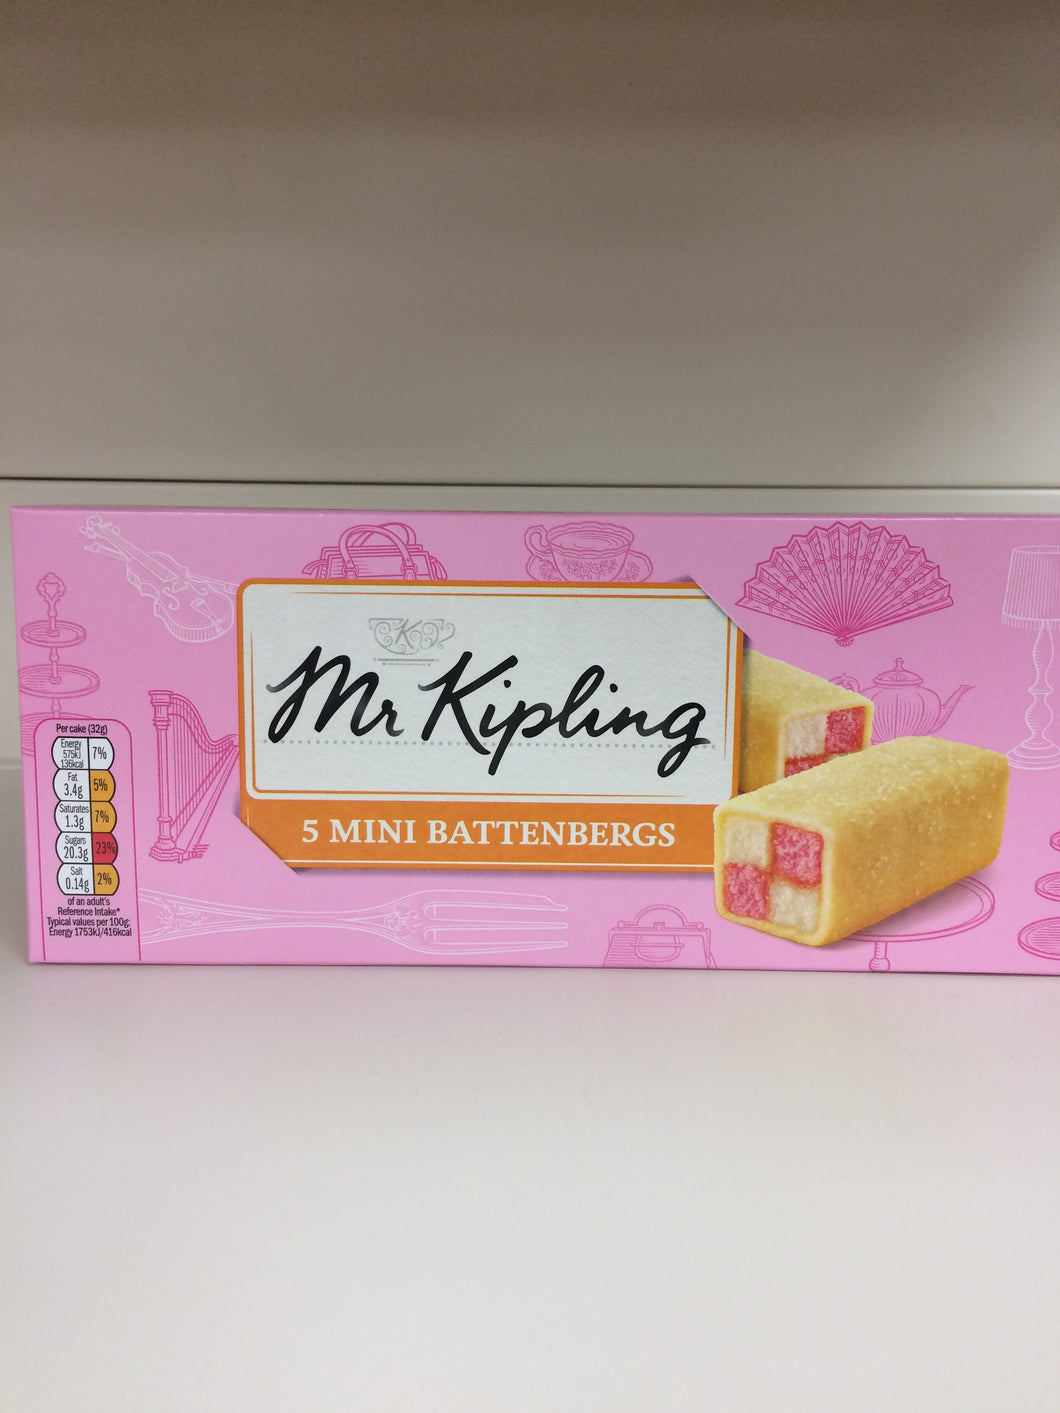 Mr Kipling 5 Mini Battenberg Cakes